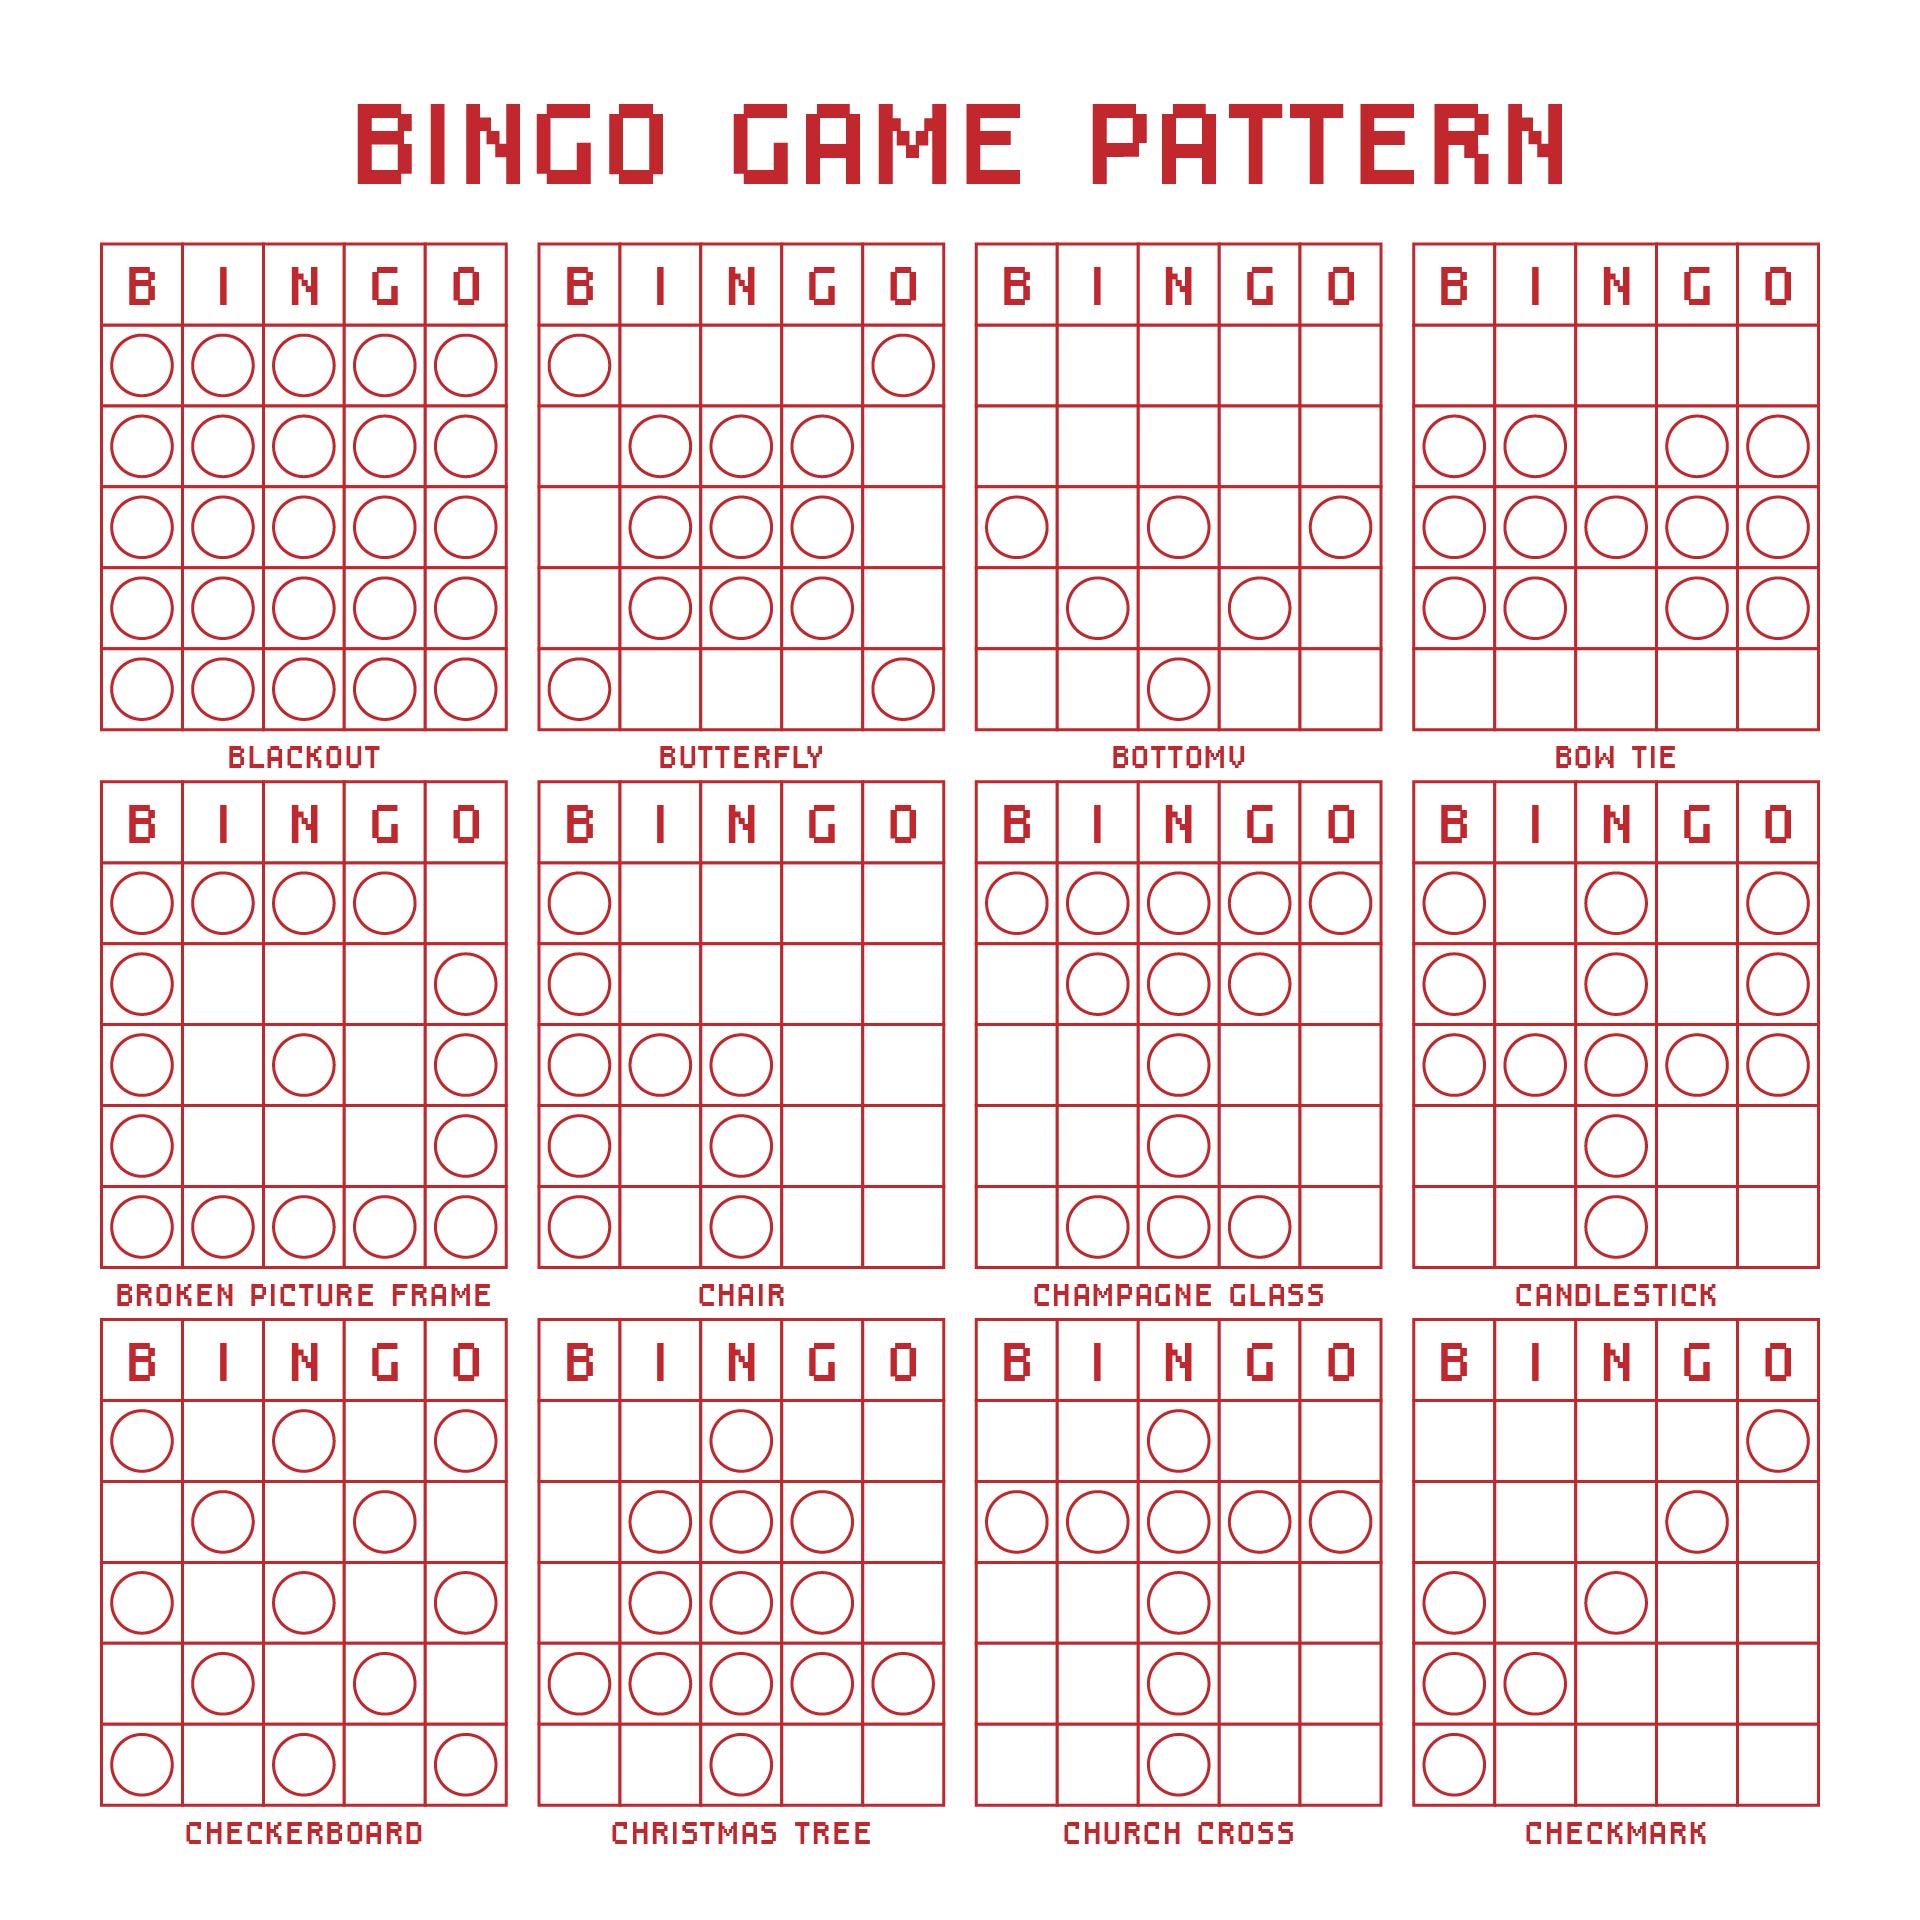 Different Bingo Game Patterns